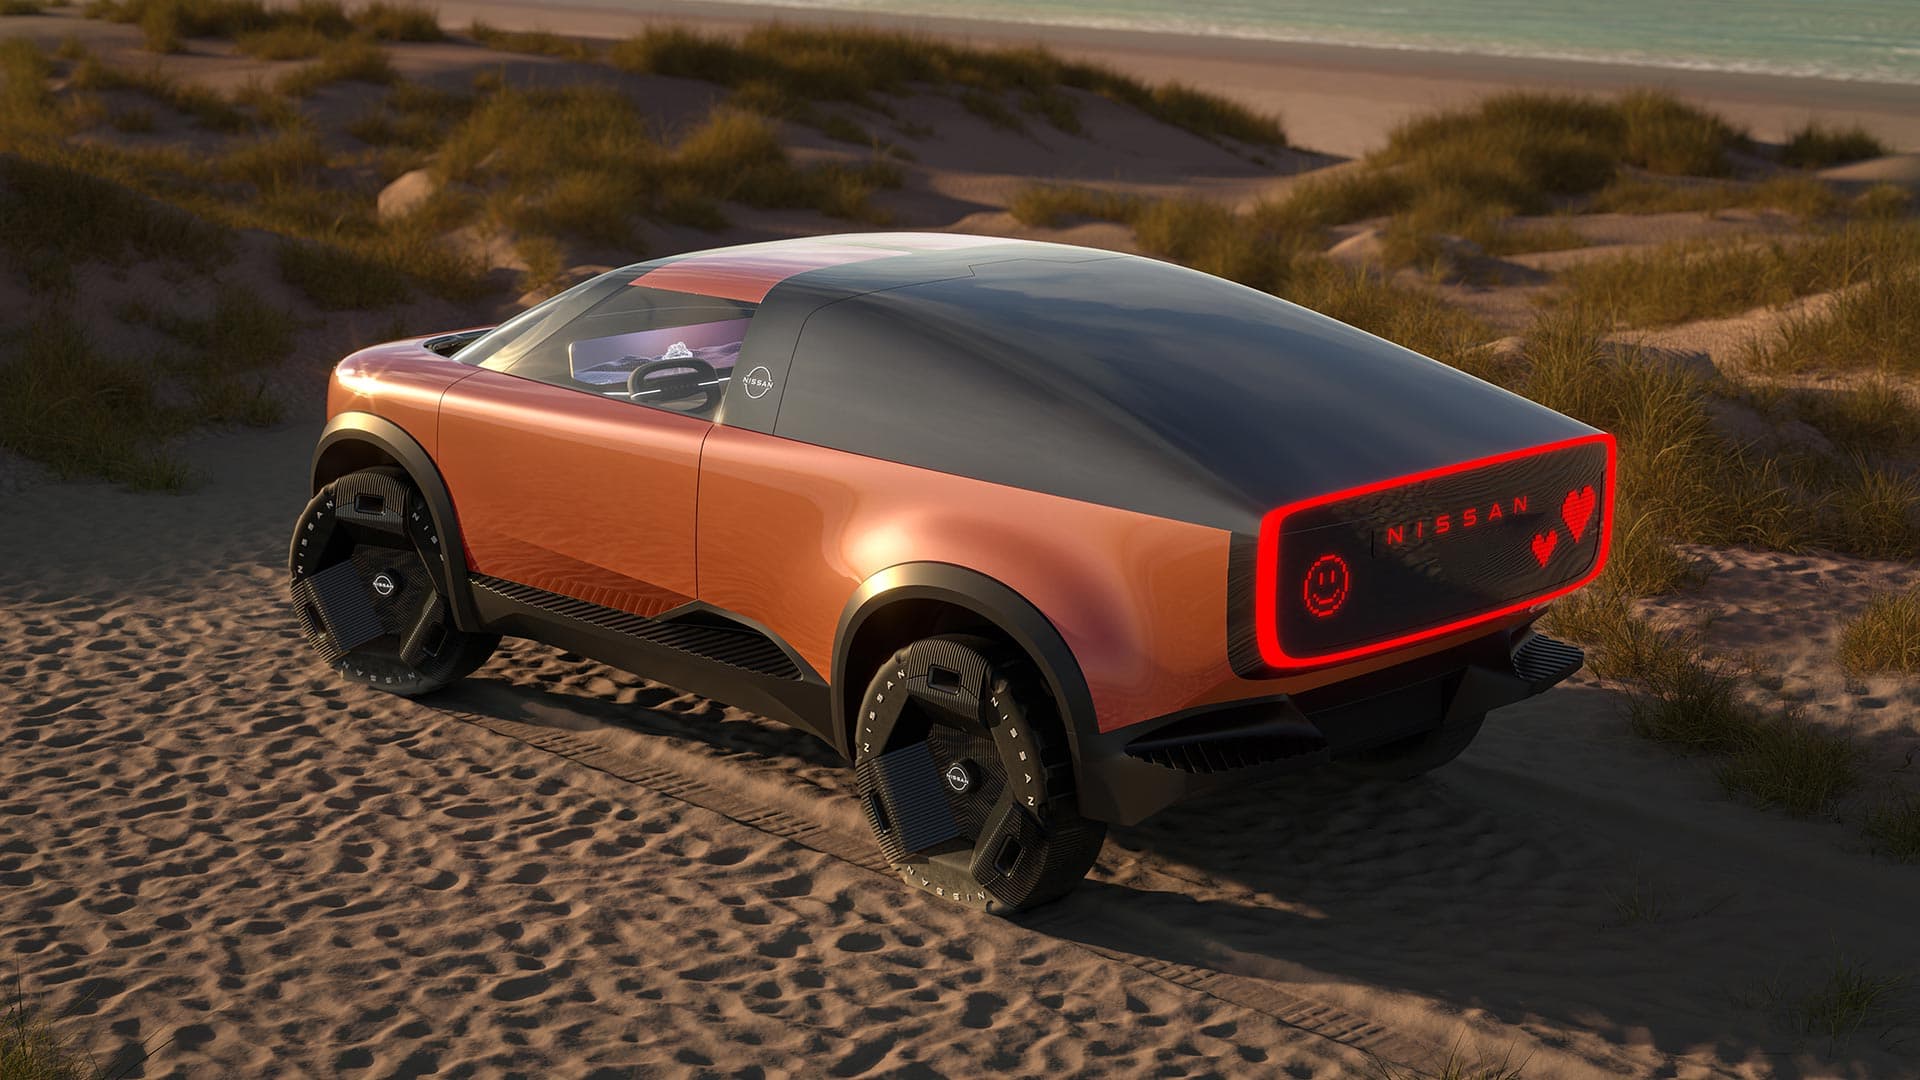 NISSAN SURF-OUT Concept Car Image